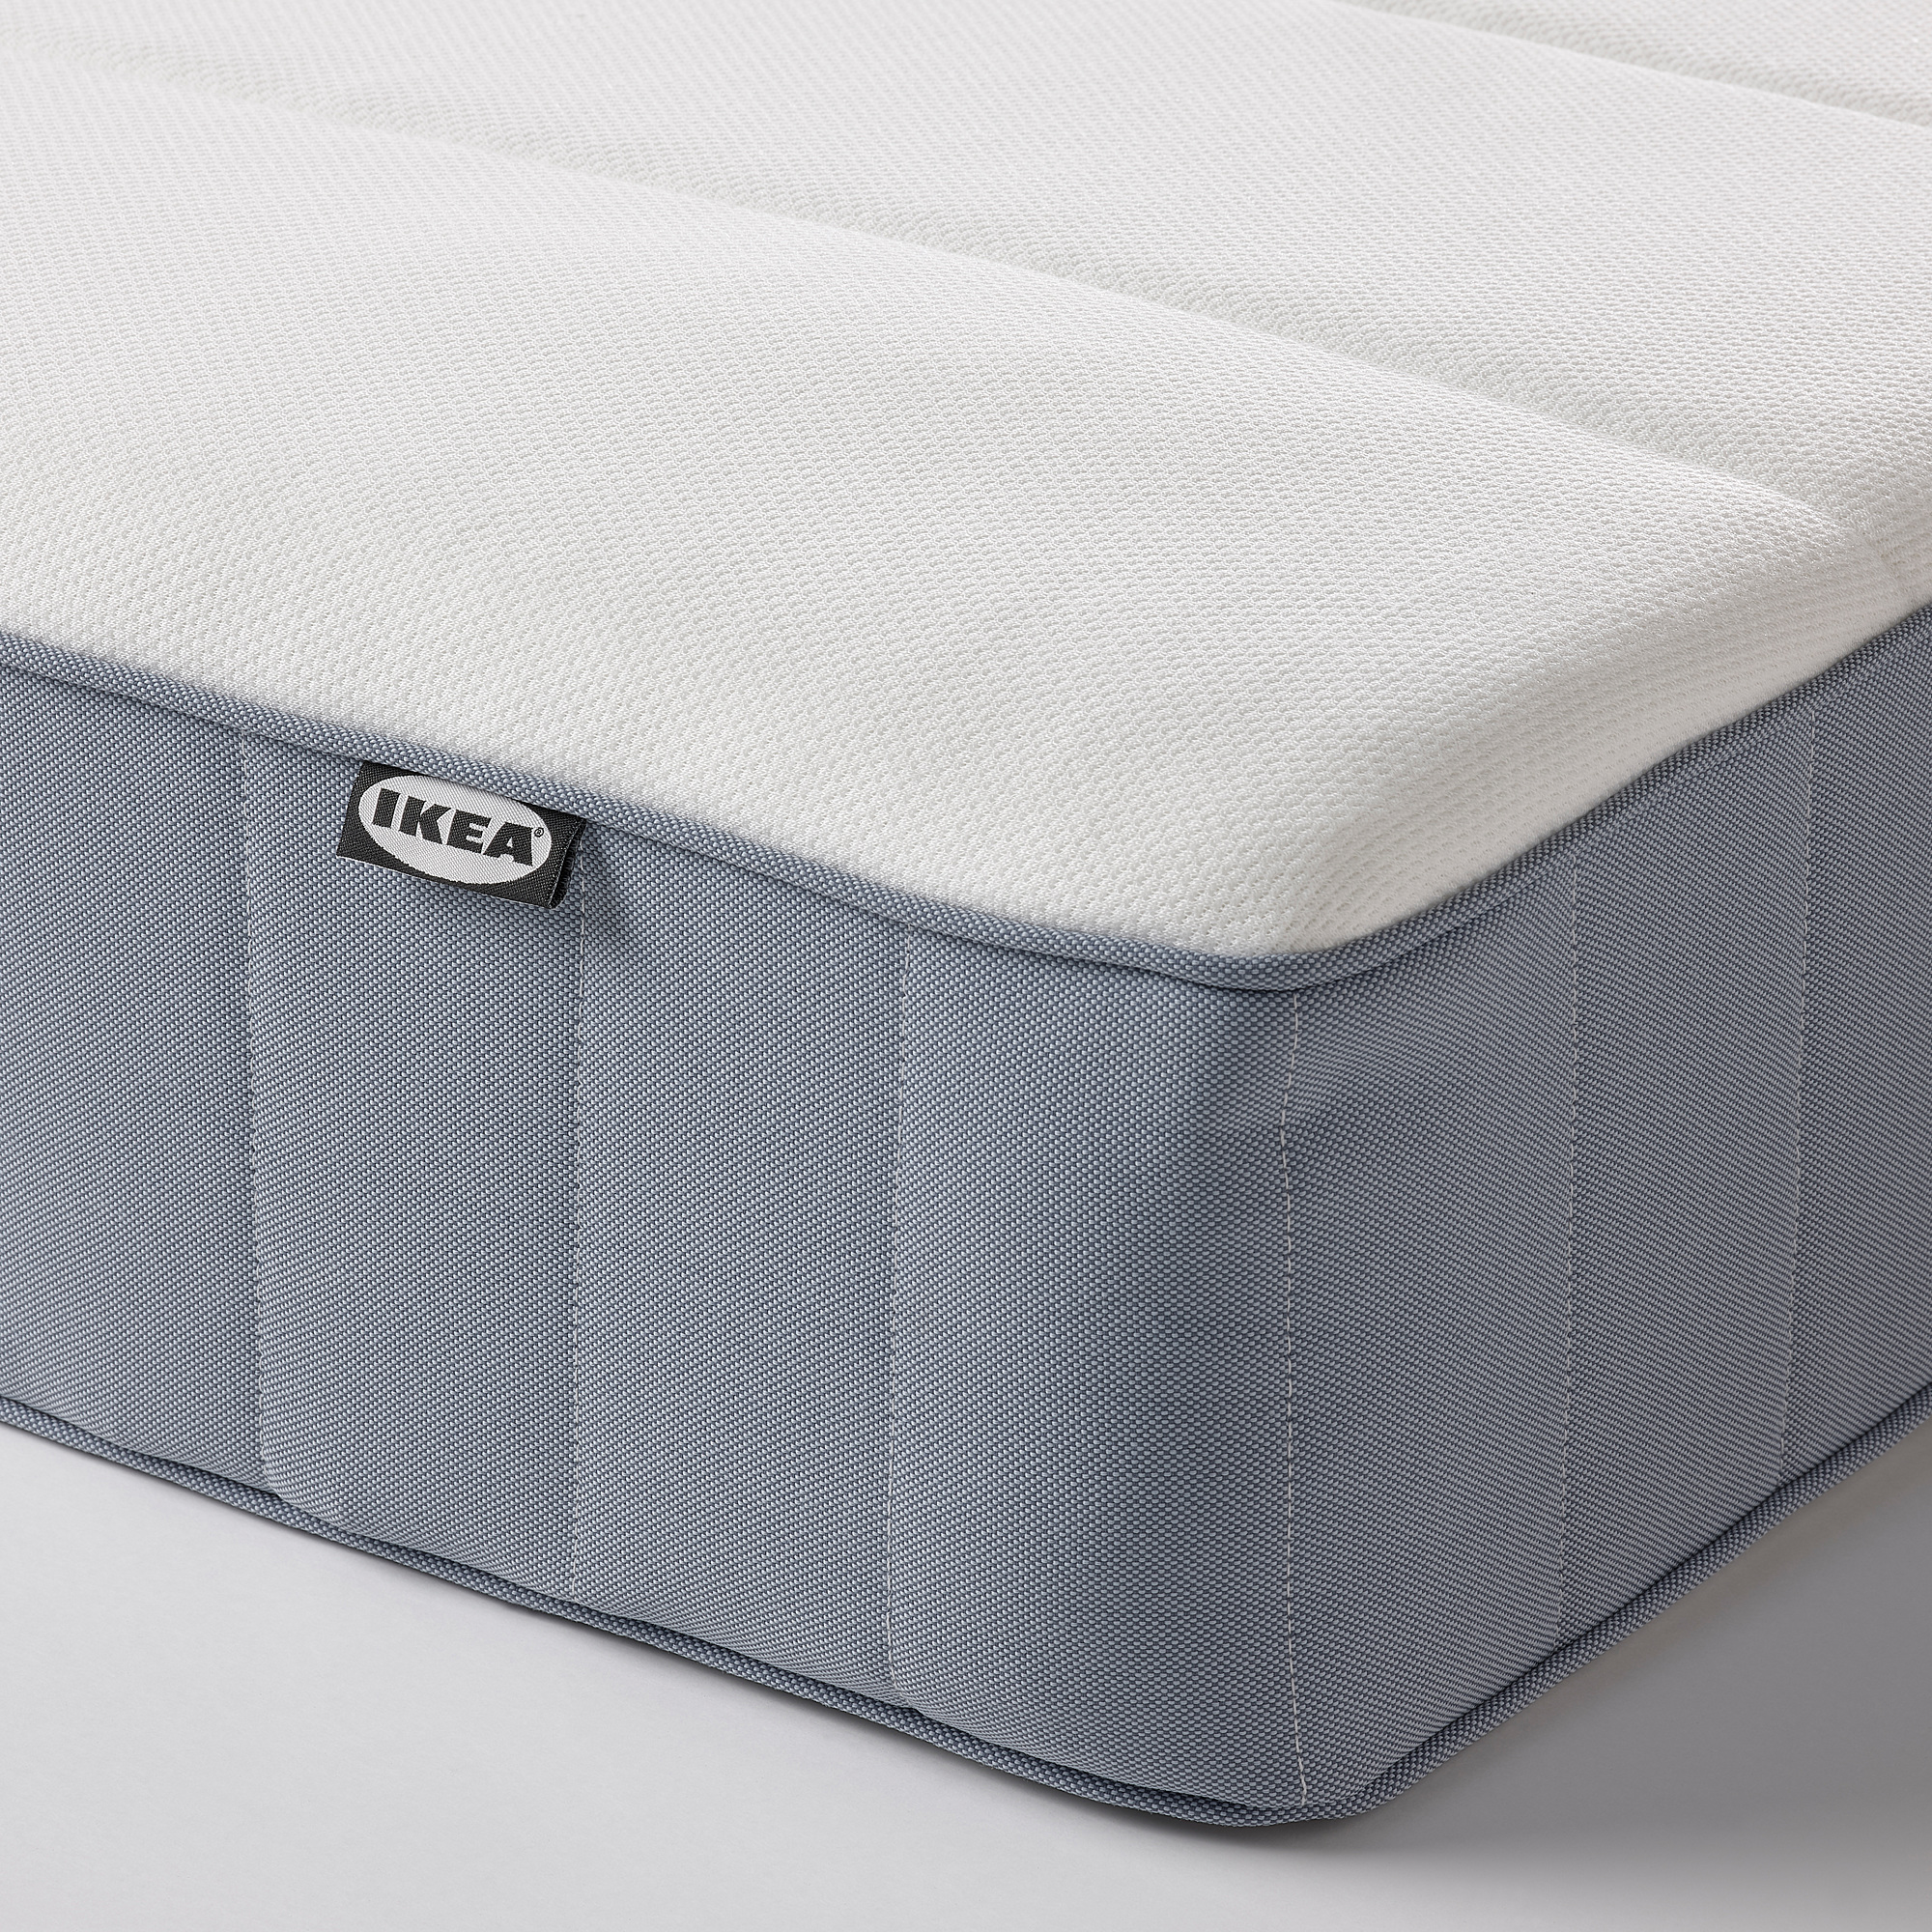 TÄLLÅSEN upholstered bed frame with mattress